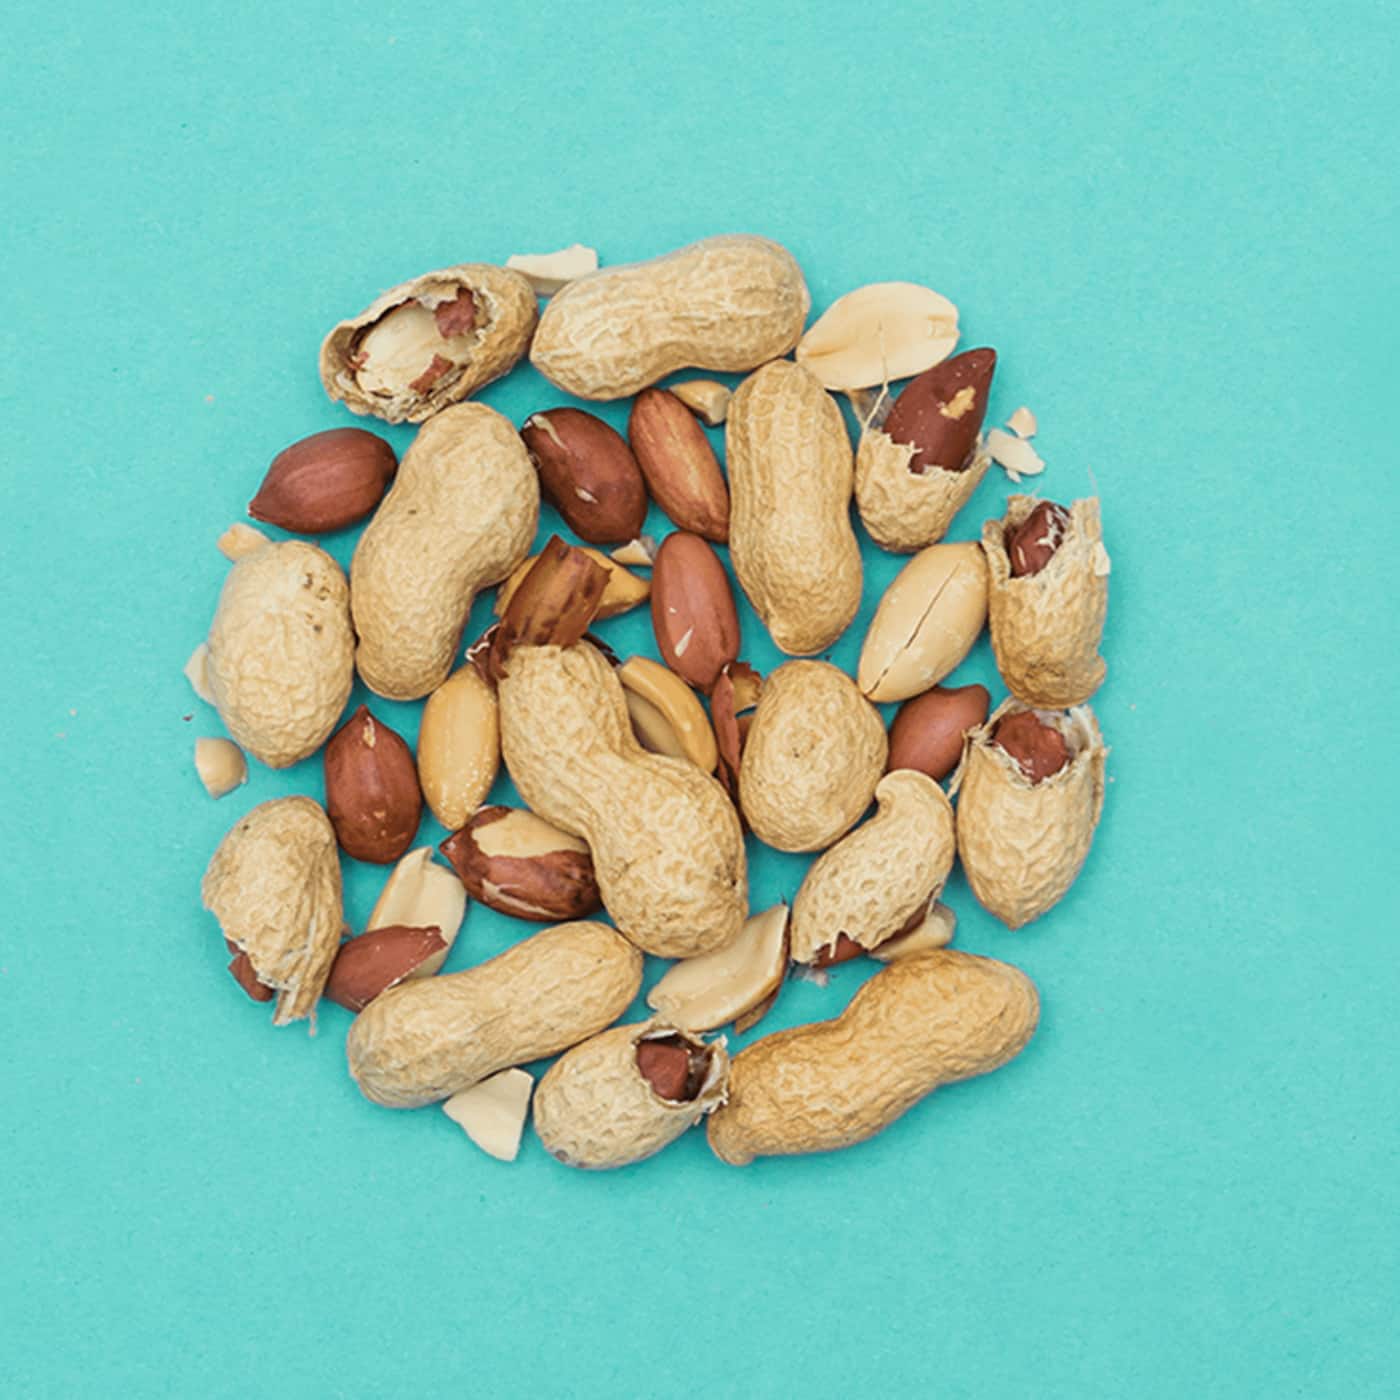 Die Erdnuss – Der Snack, der einfach immer passt